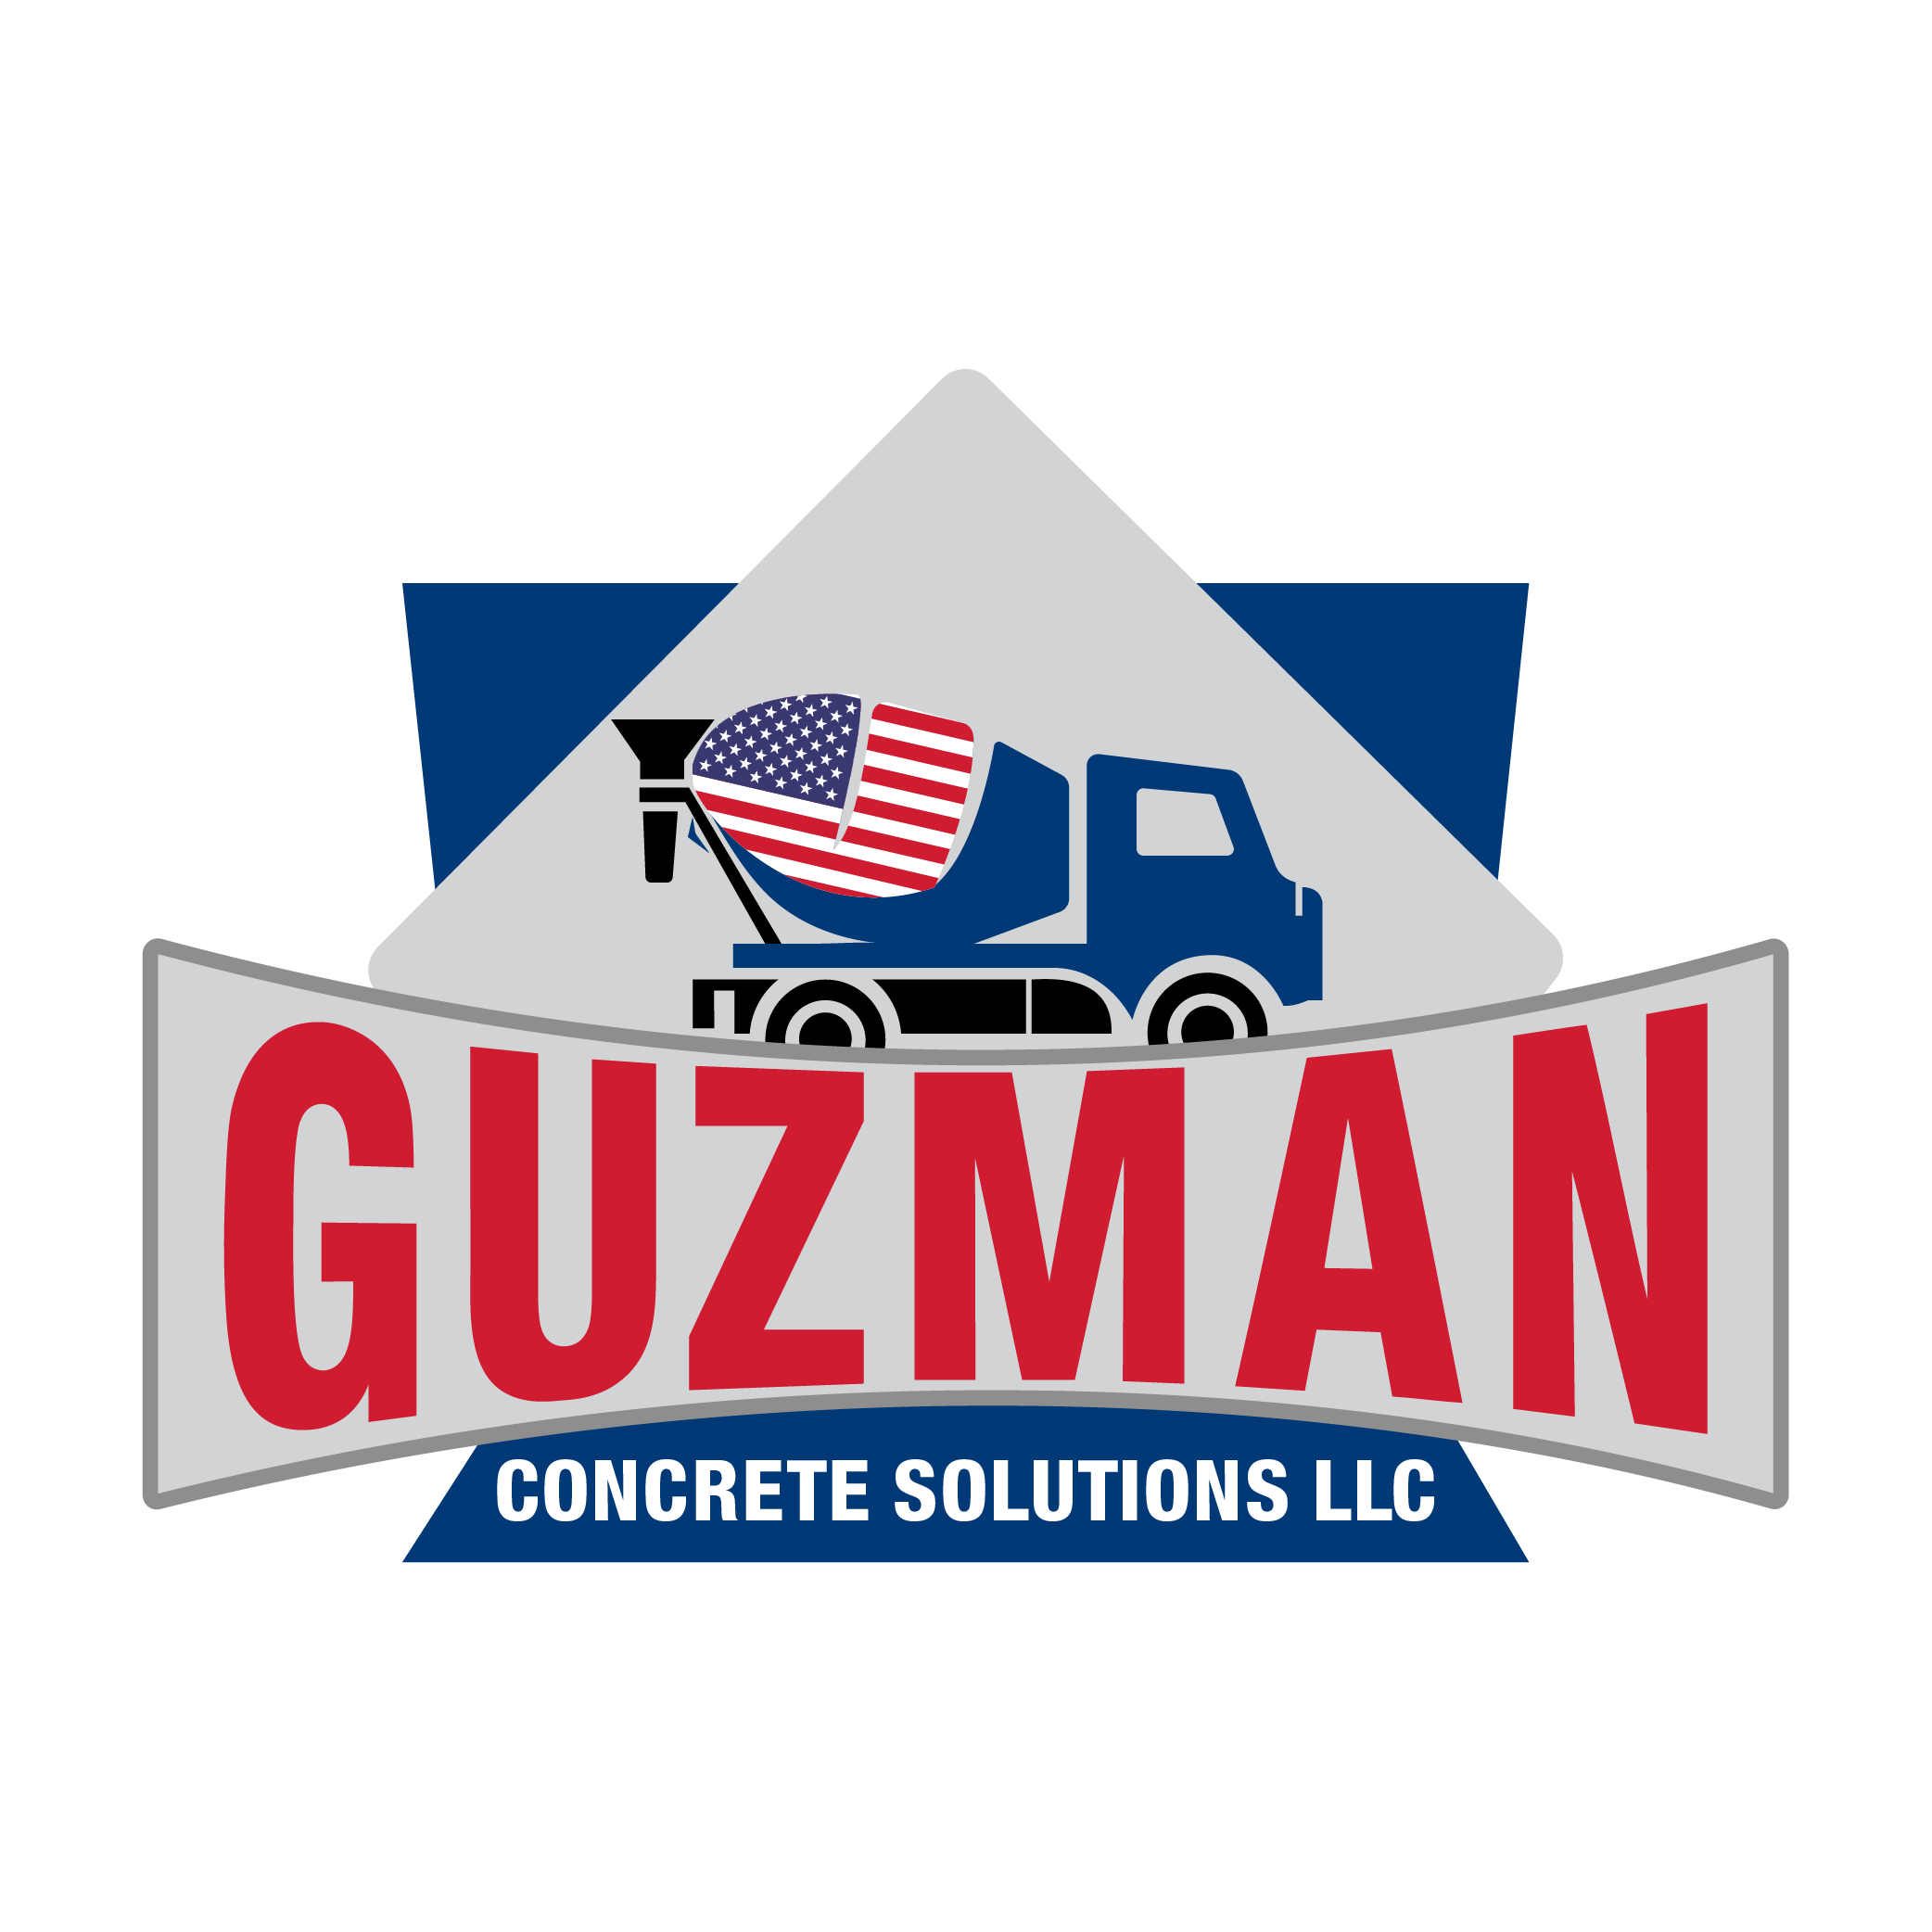 Guzman concrete solutions llc